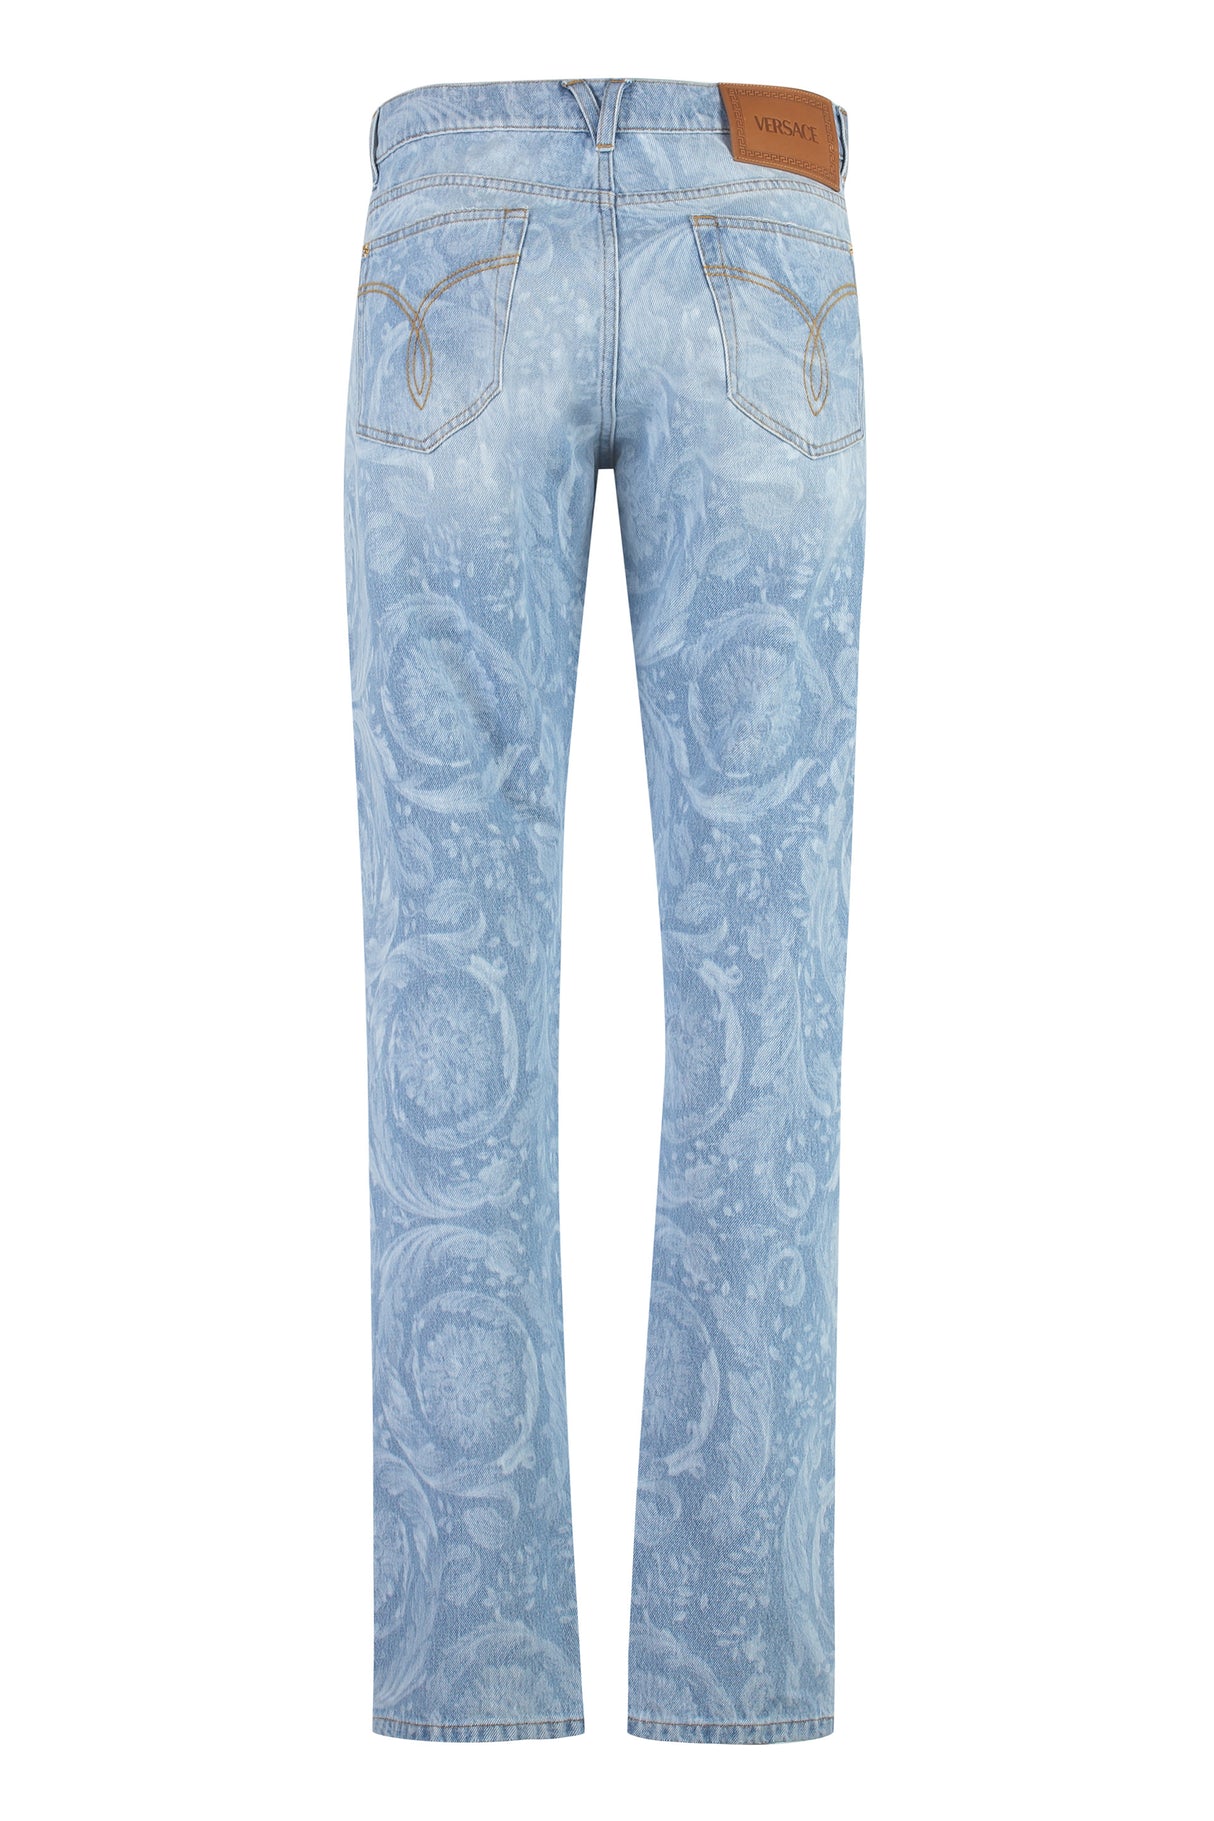 بنطال جينز أزرق للرجال من فيرساتشي برسوم الليزر وطبعة البروك الباروكية